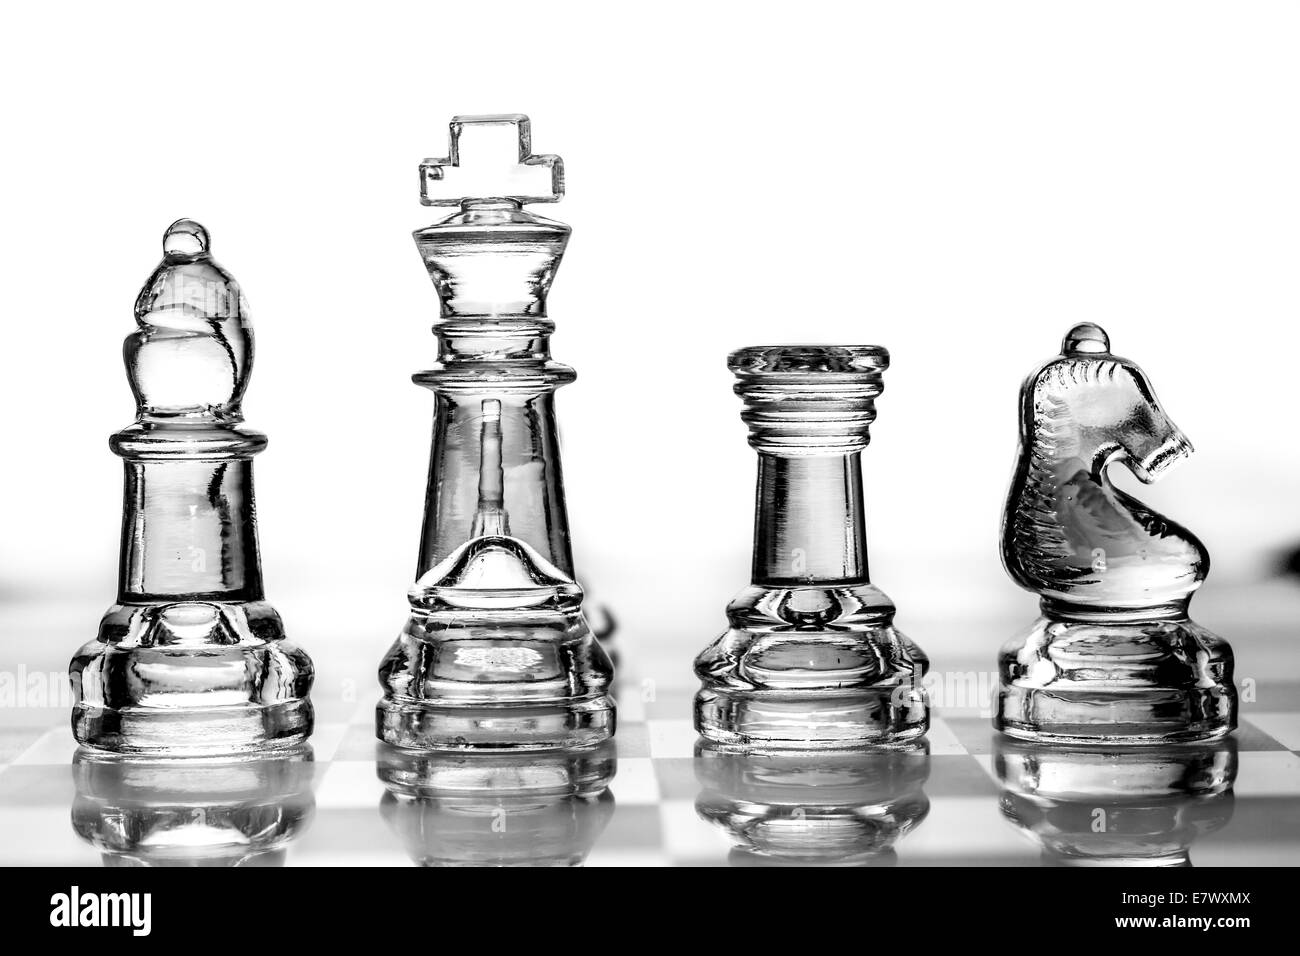 Bischof, König, Turm und Ritter Schachfiguren aus Glas gefertigt Stockfoto